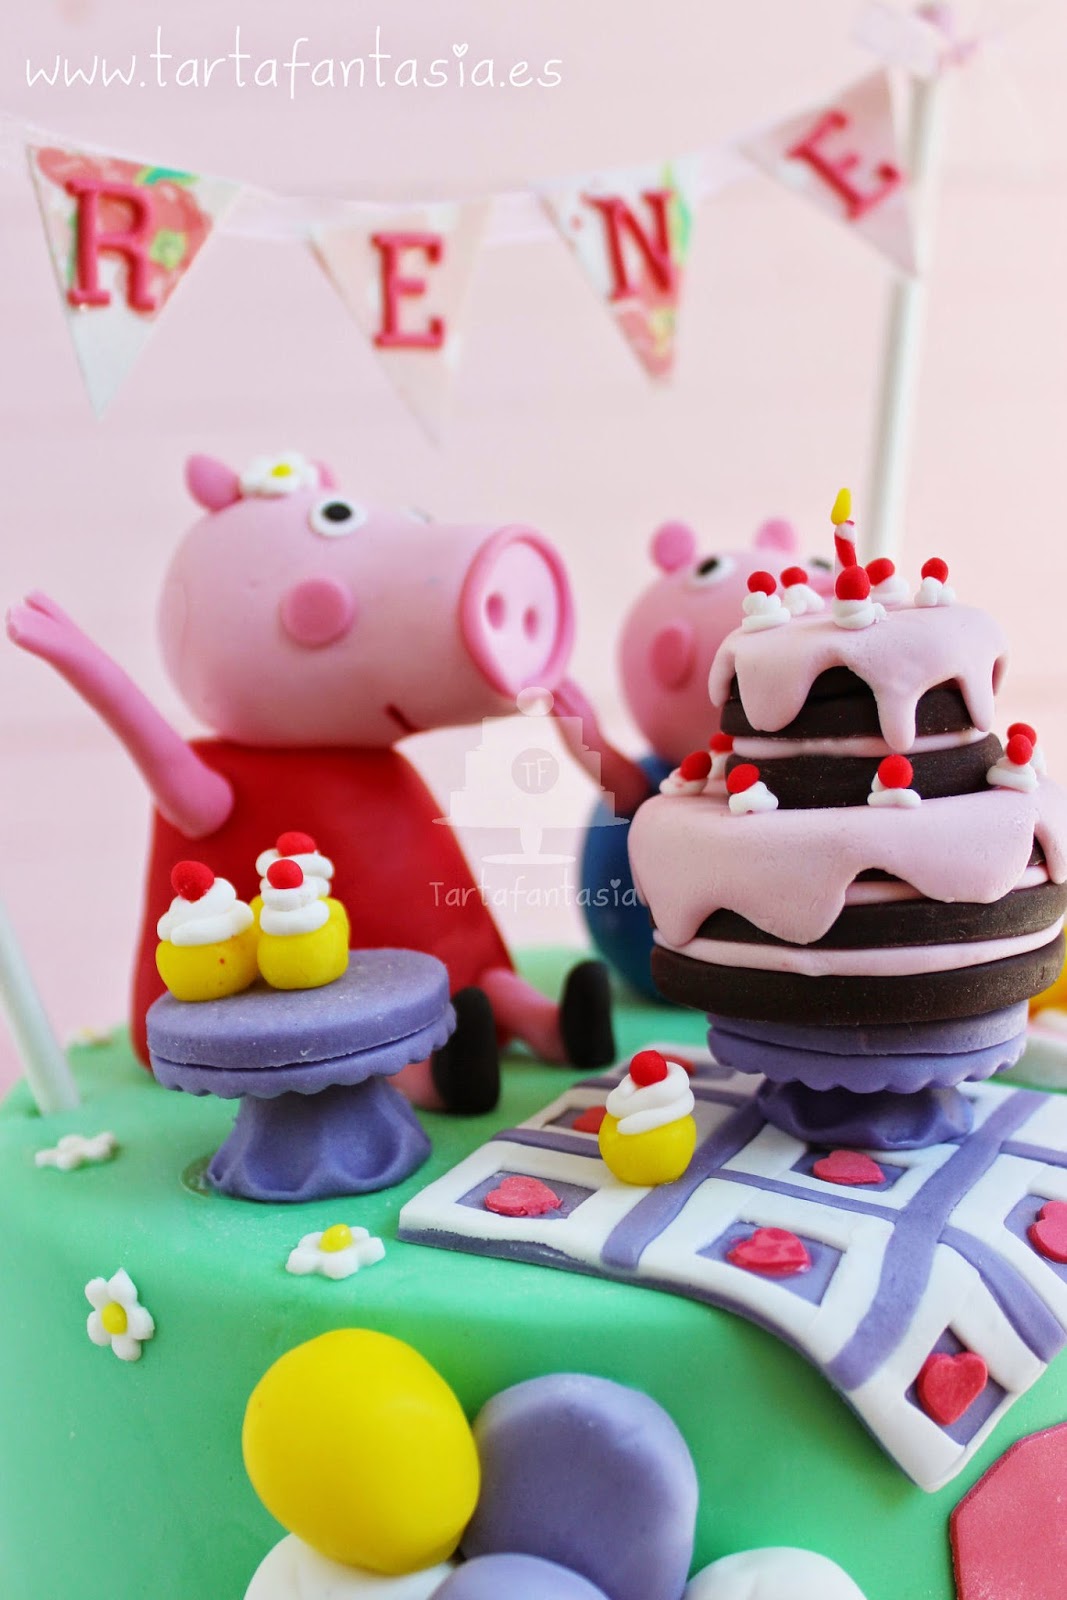 Mini Figuras Bolas Set Usado para Fiesta de Cumpleaños Pastel Decoración Suministros Acción Juguetes Modelo Muñecas 1 Minibola Decoración Tarta de Cumpleaños 8 Mini Cake Topper Figuras 